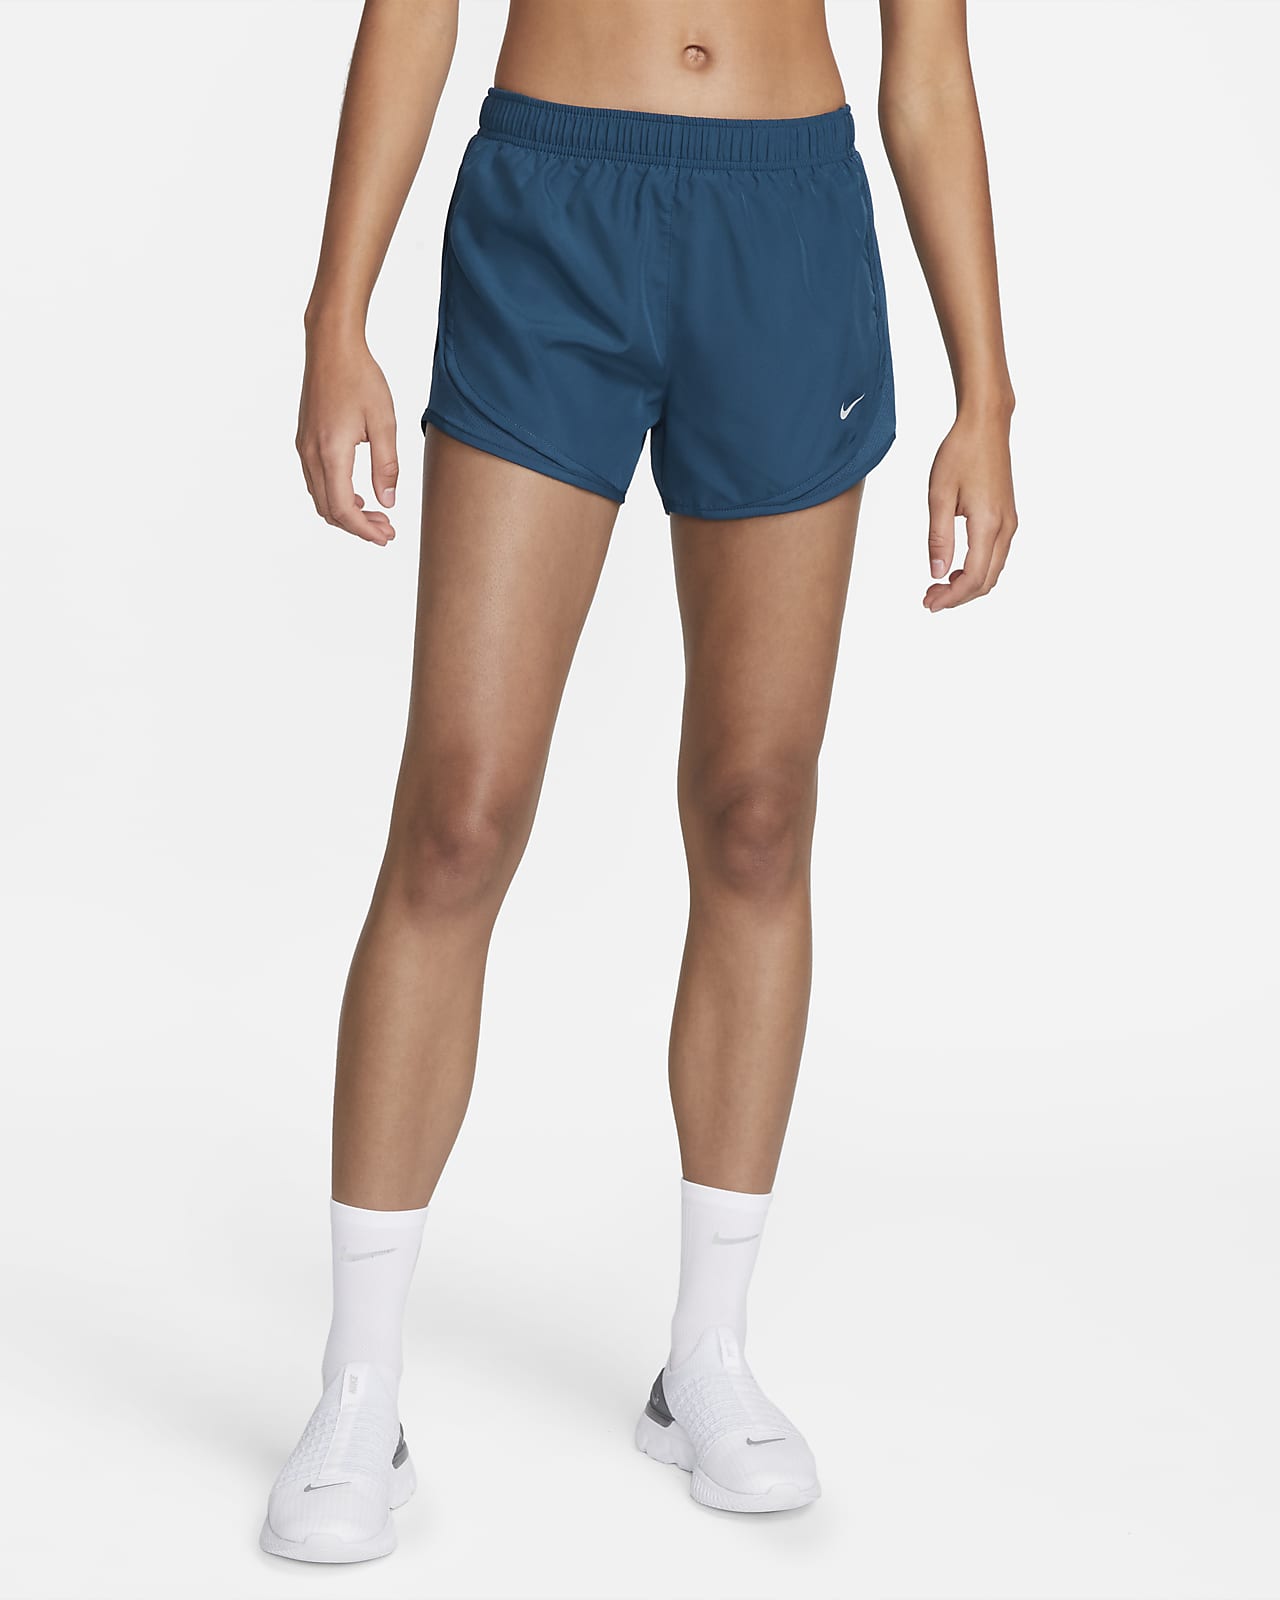 Shorts con ropa forrada para mujer Nike Tempo. Nike.com